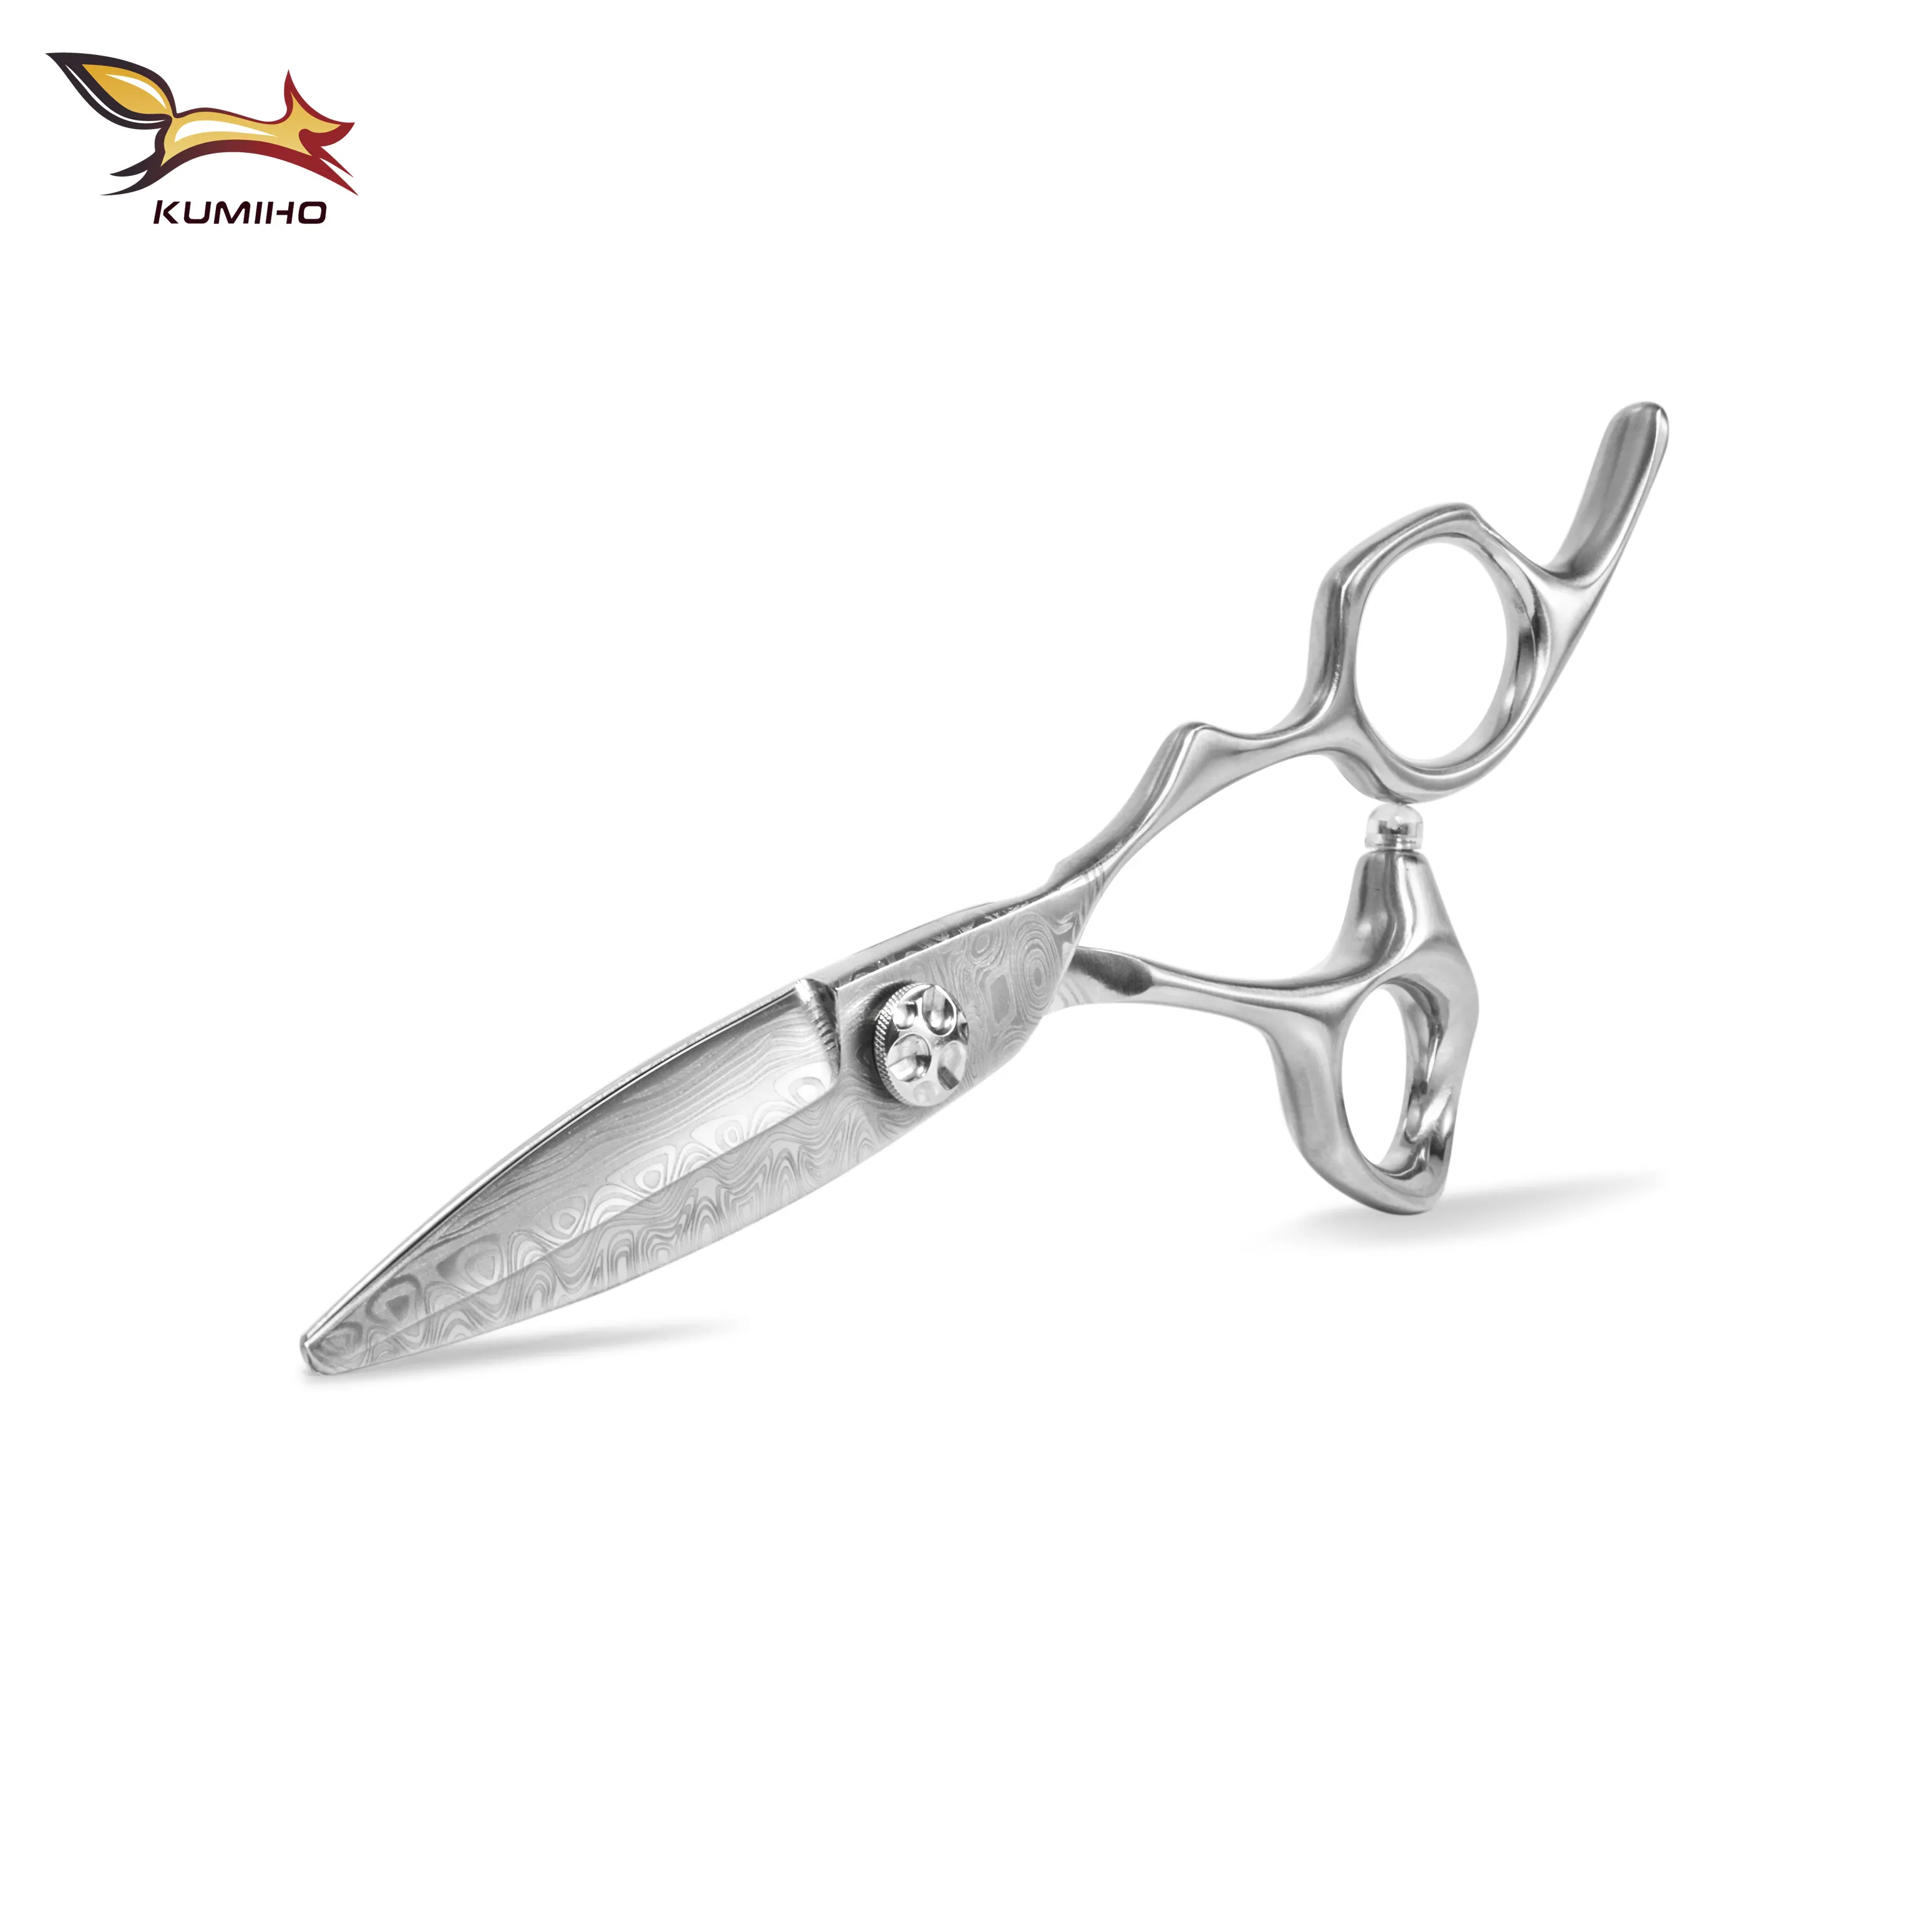 2019 new arrival DMSG-60 Damascus pattern hair scissors 6inch chinese 440c high grade sliding scissors